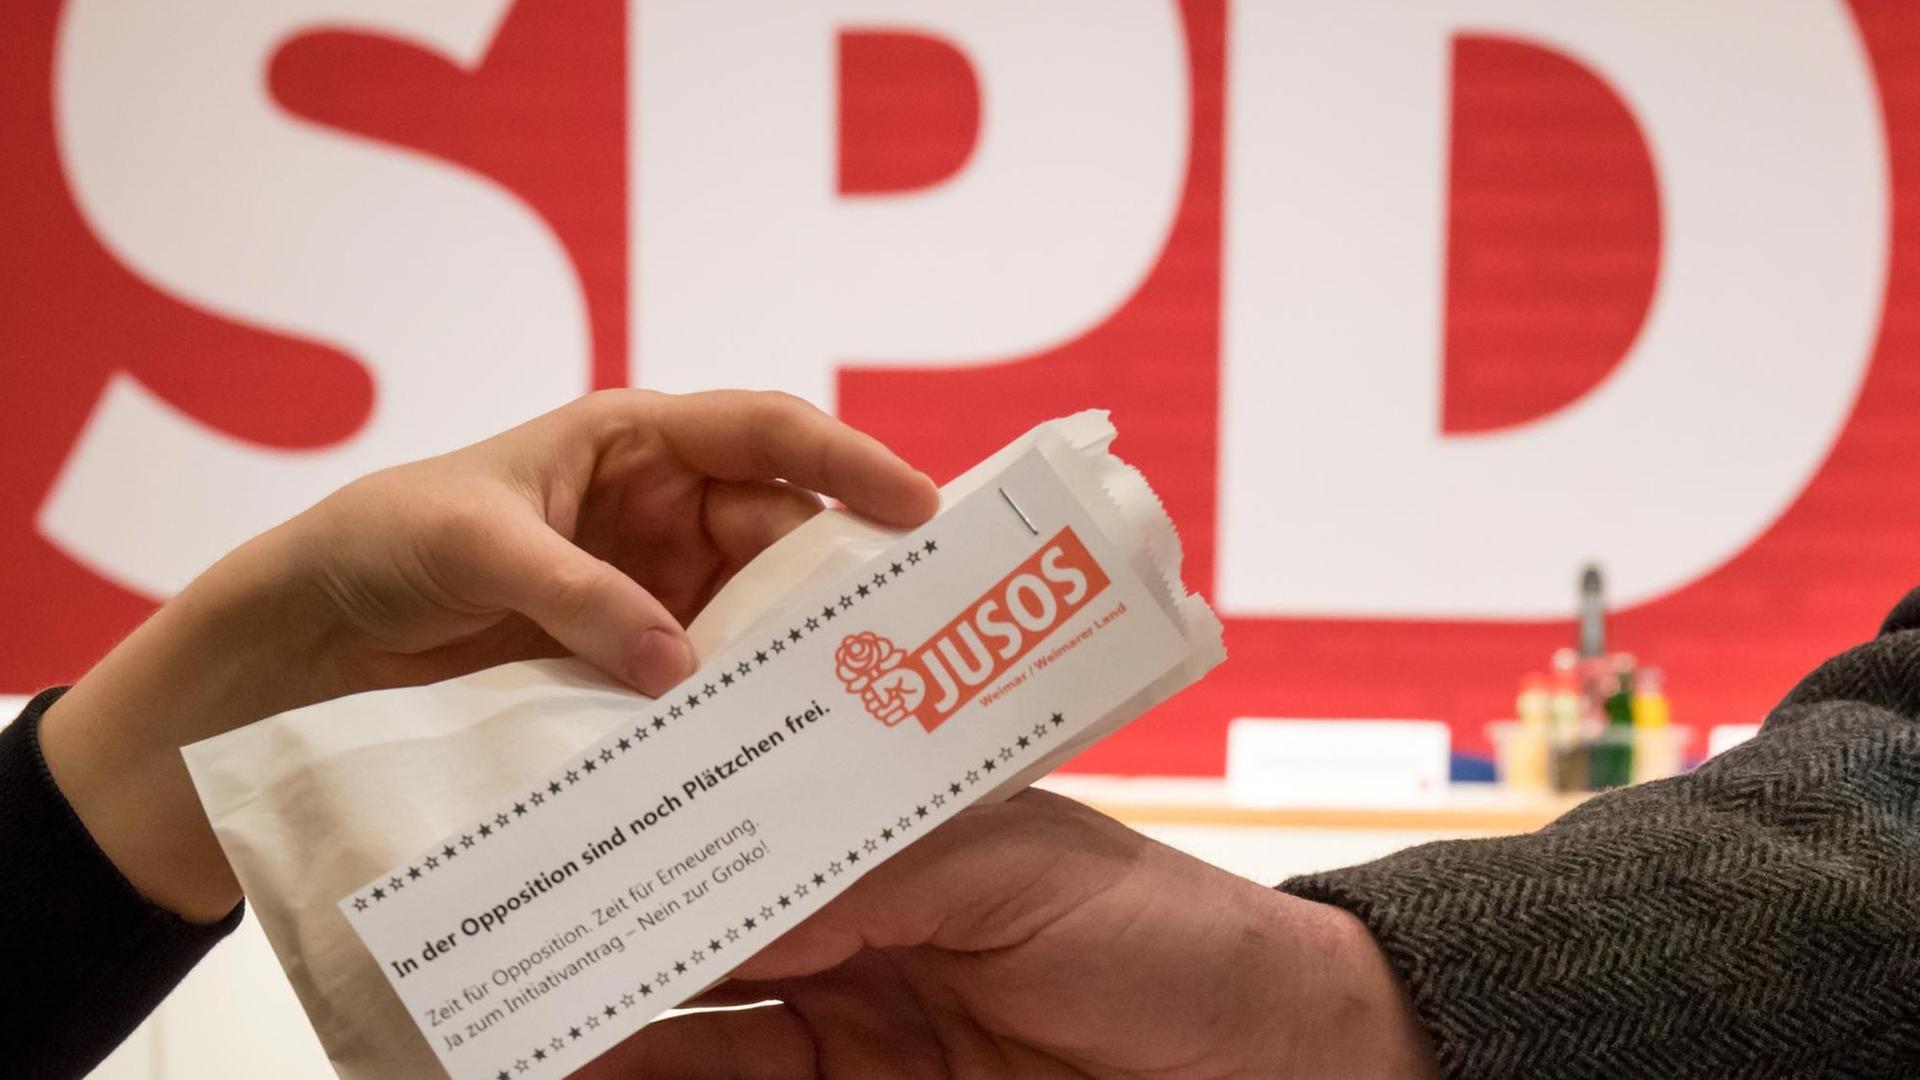 Ein Juso-Mitglied verteilt am 16.12.2017 beim außerordentlichen Landesparteitag der SPD Thüringen in Erfurt (Thüringen) eine Plätzchentüte mit Werbung für den Gang in die Opposition.